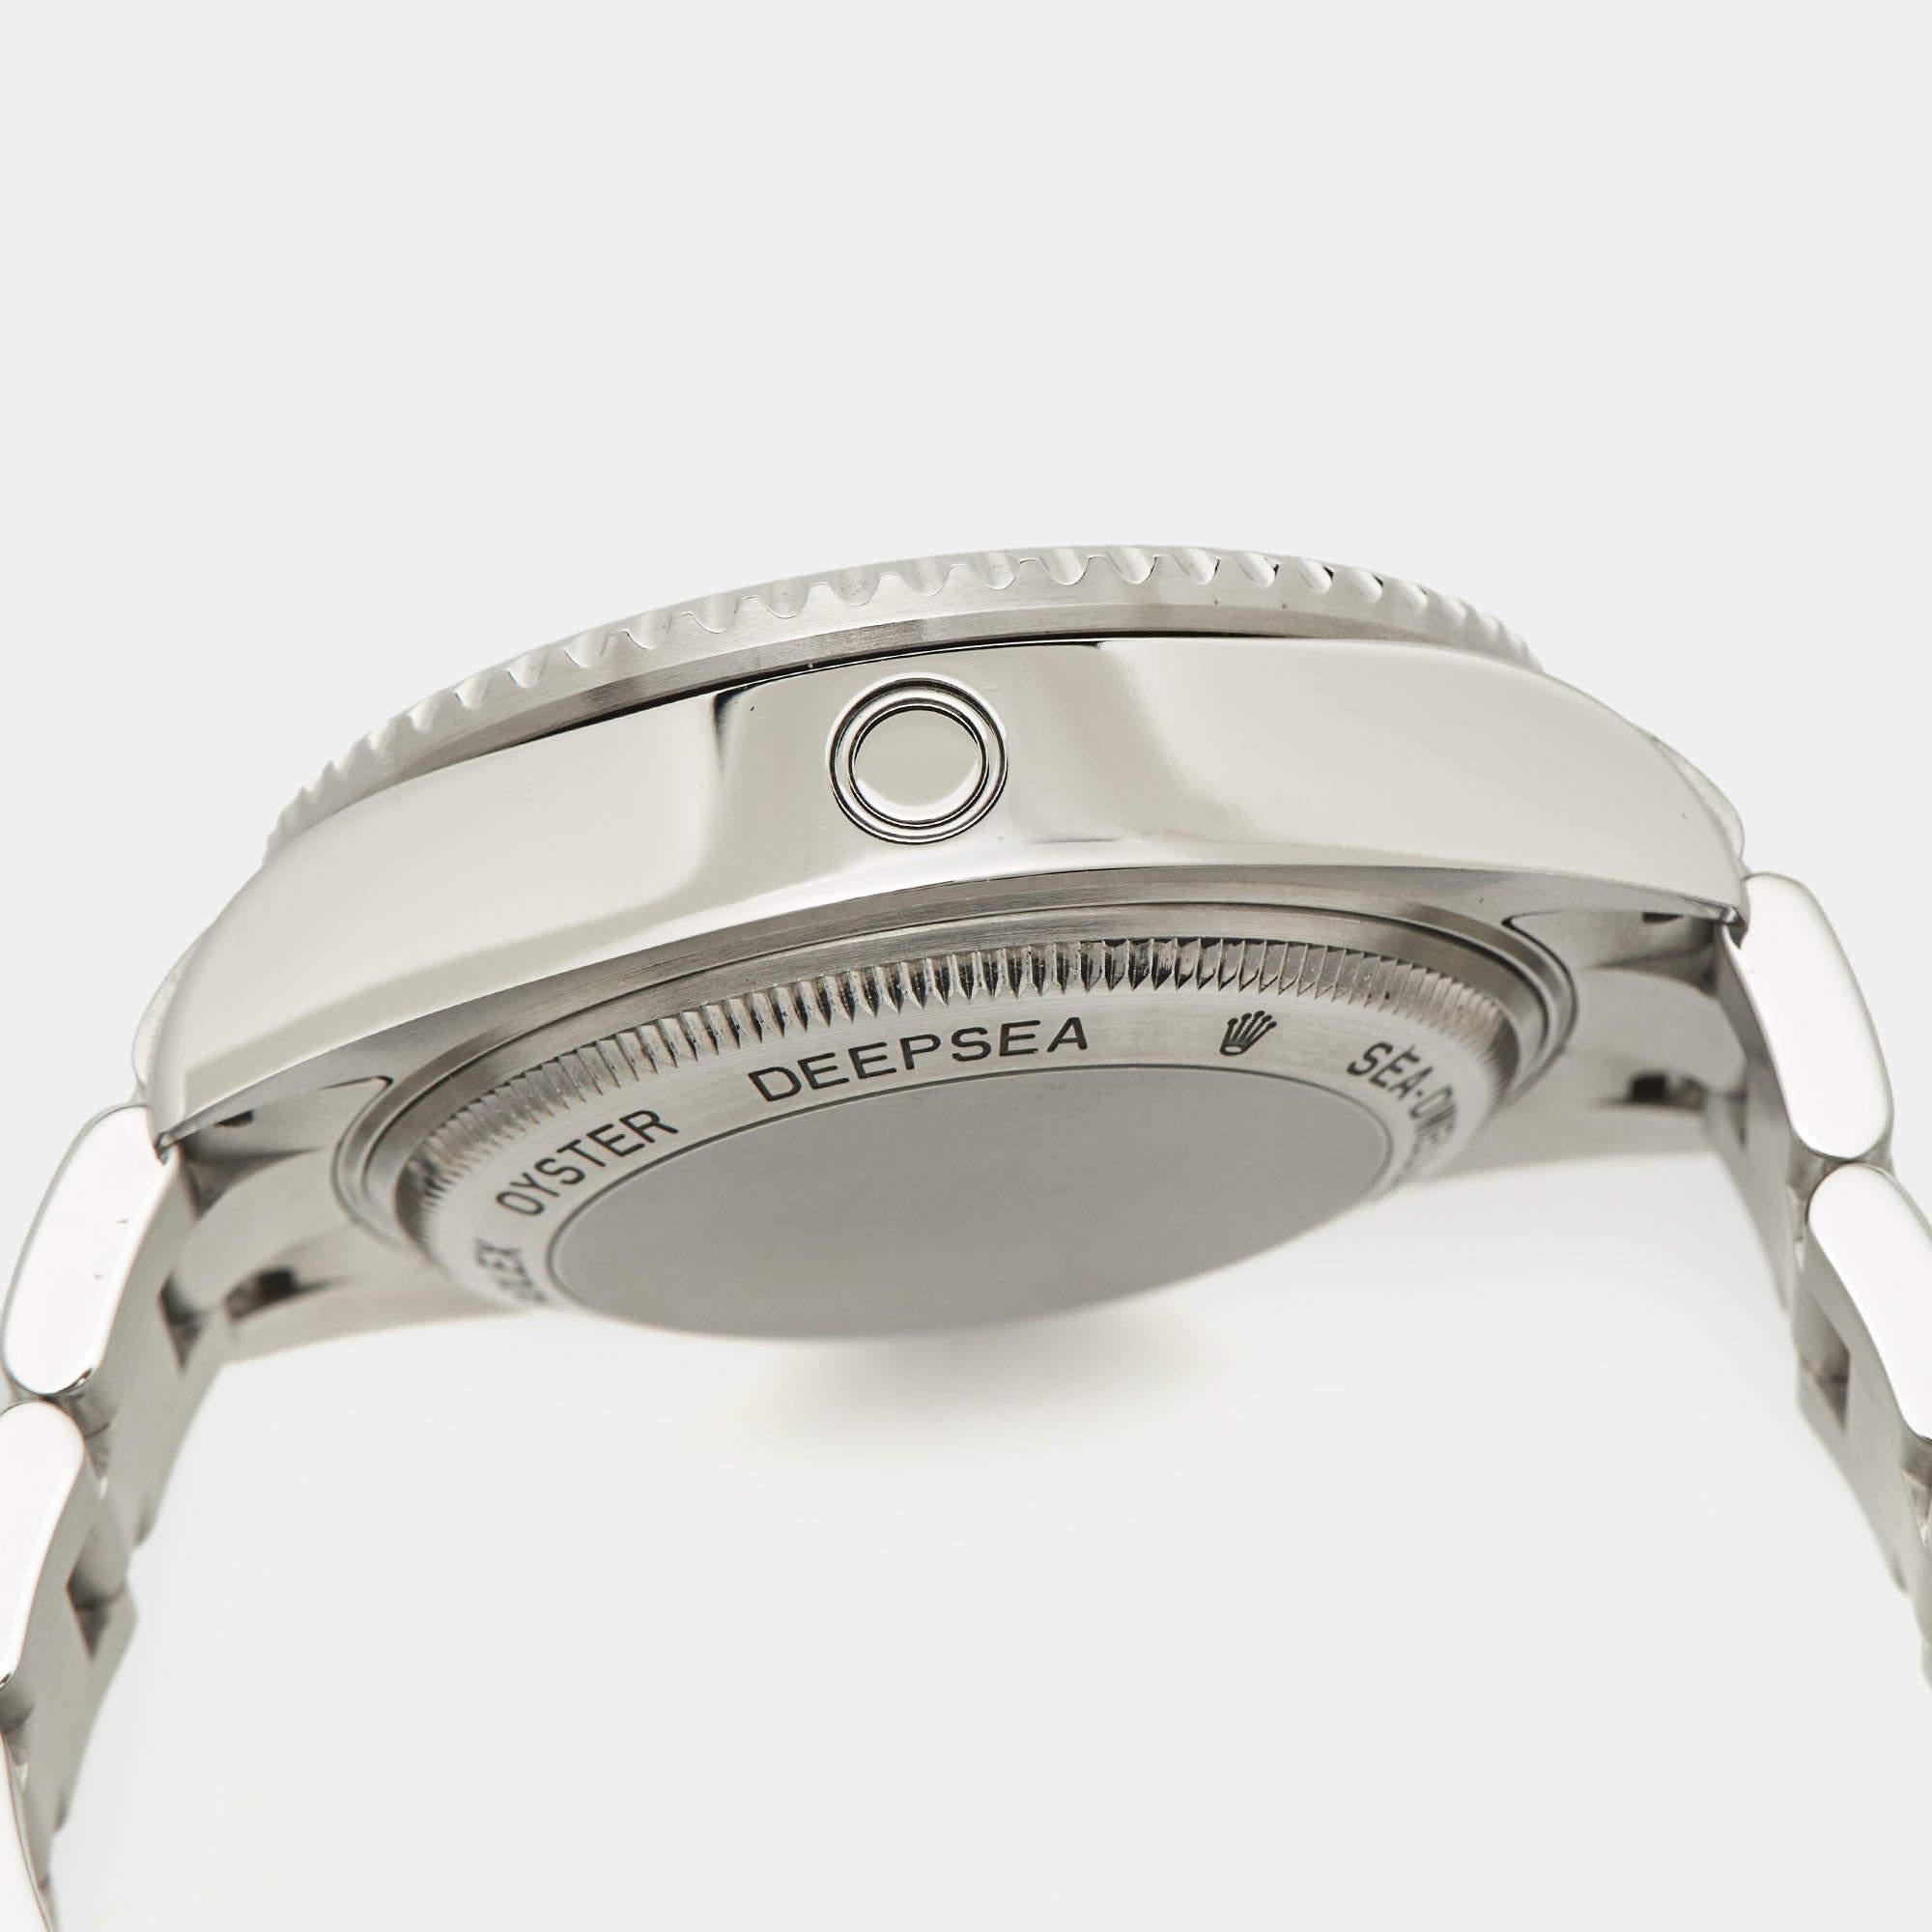 La Rolex DeepSea Sea-Dweller 116660-0001 est une montre-bracelet sophistiquée pour homme, connue pour sa conception robuste et ses capacités de plongée exceptionnelles. Fabriqué avec précision, son boîtier en acier inoxydable est doté d'une